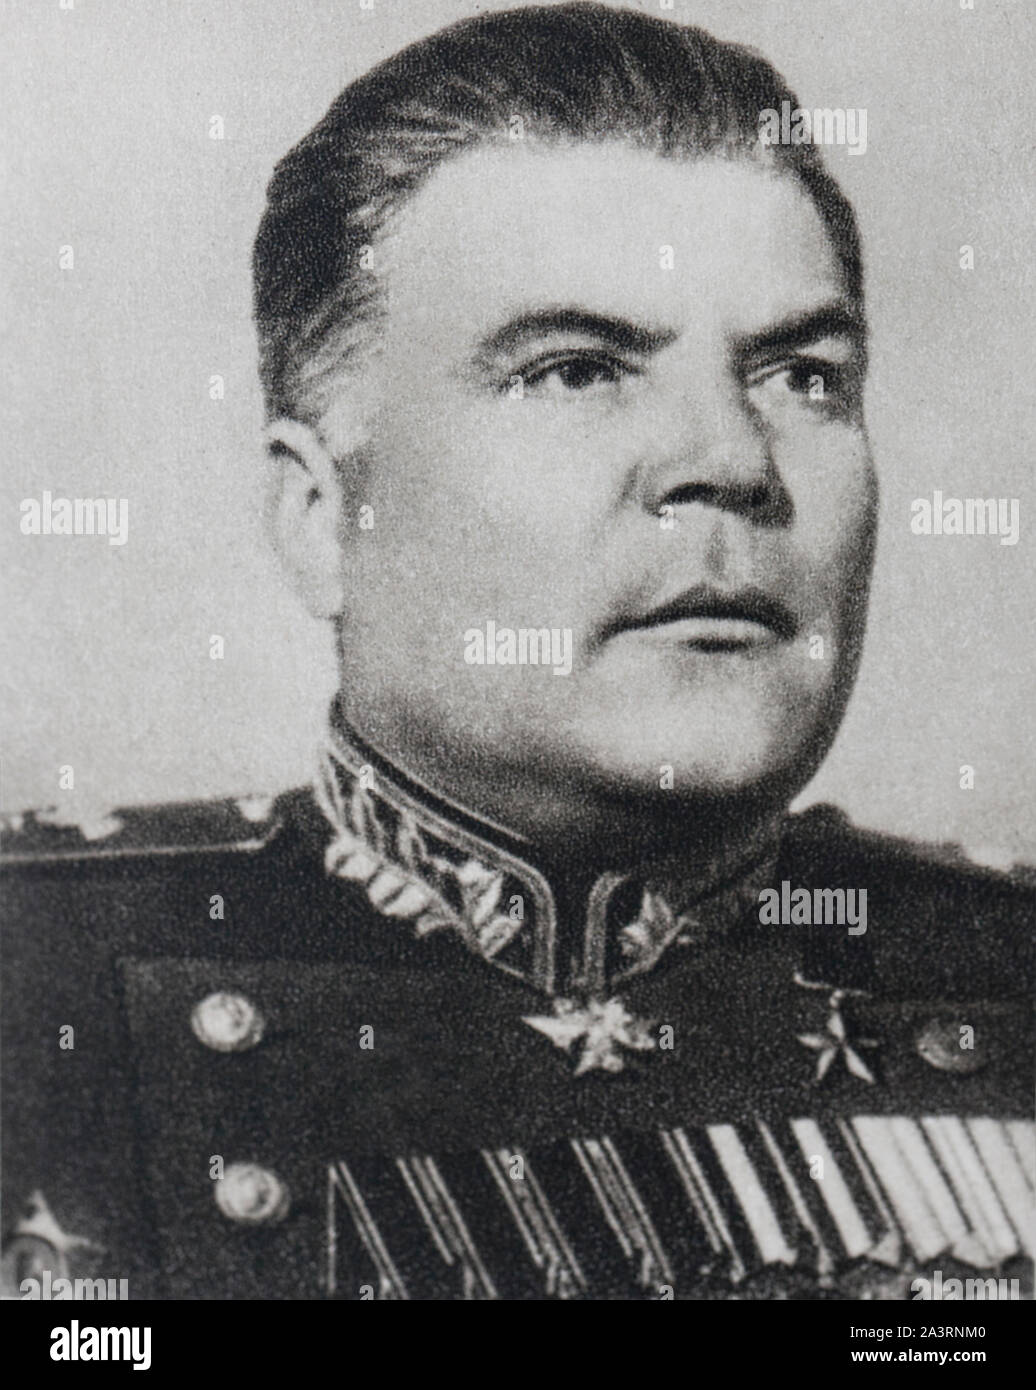 Rodion Jakowlewitsch Malinovsky (1898-1967) war ein sowjetischer Militärbefehlshaber im Zweiten Weltkrieg, Marschall der Sowjetunion, und Verteidigungsminister der Stockfoto